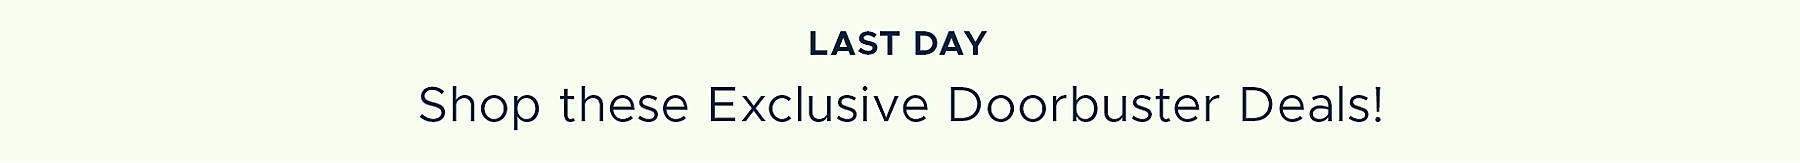 Last Day Shop these Exclusive Doorbuster Deals!